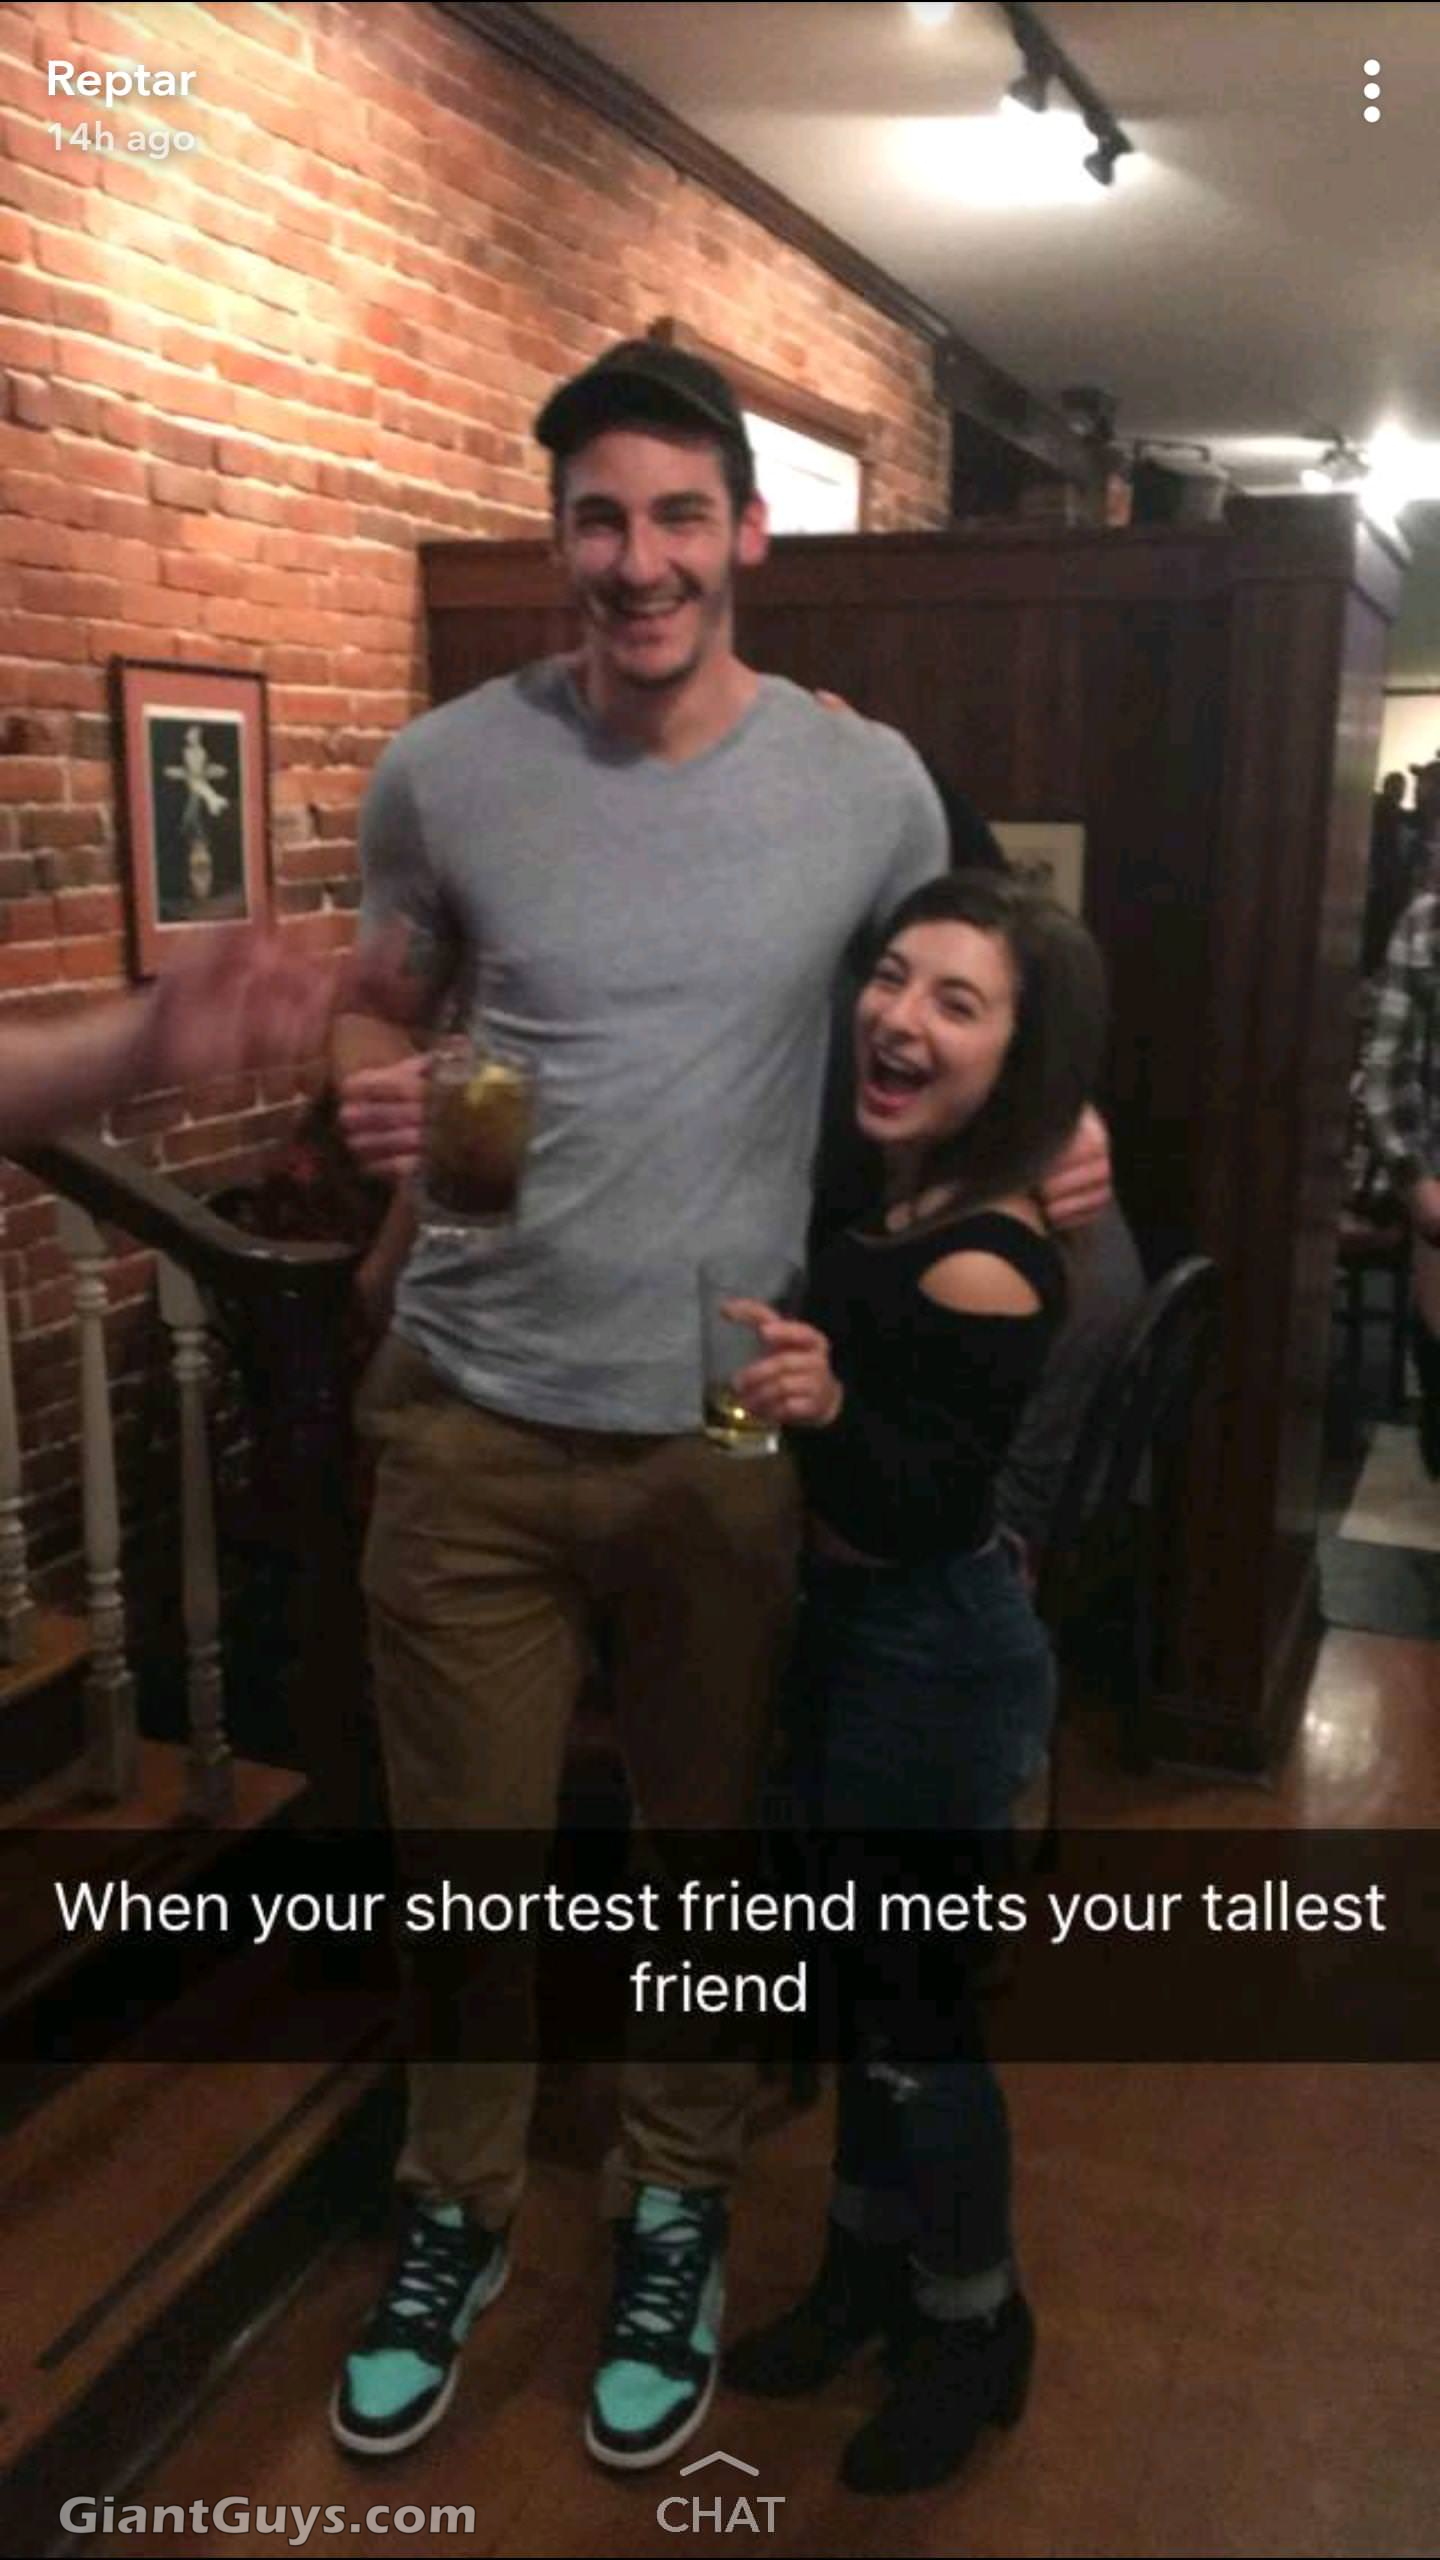 When your shortest friend meets your tallest friend